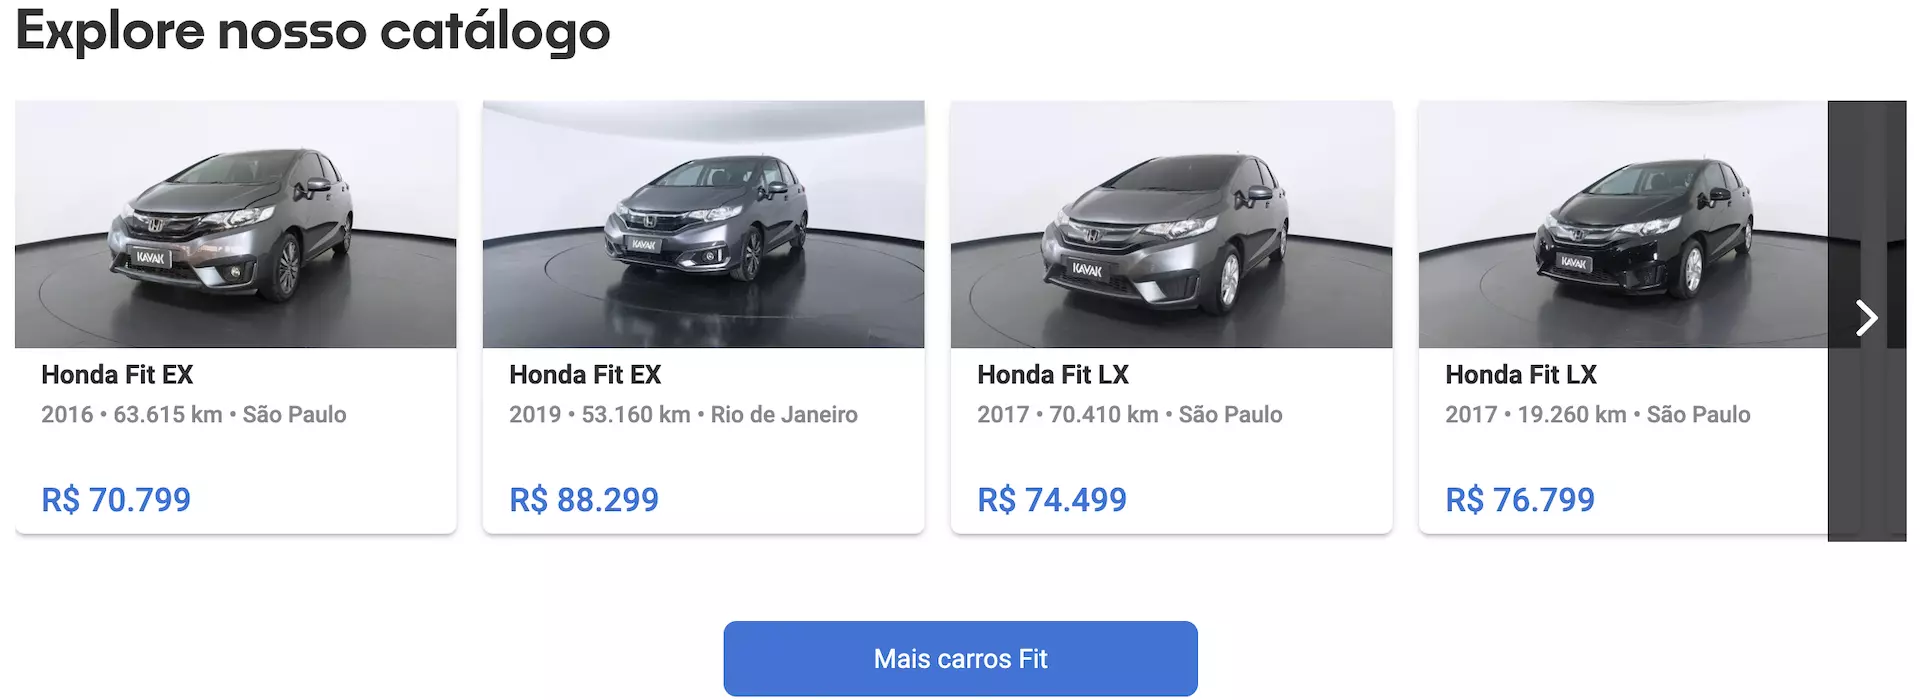 Preço do Honda Fit